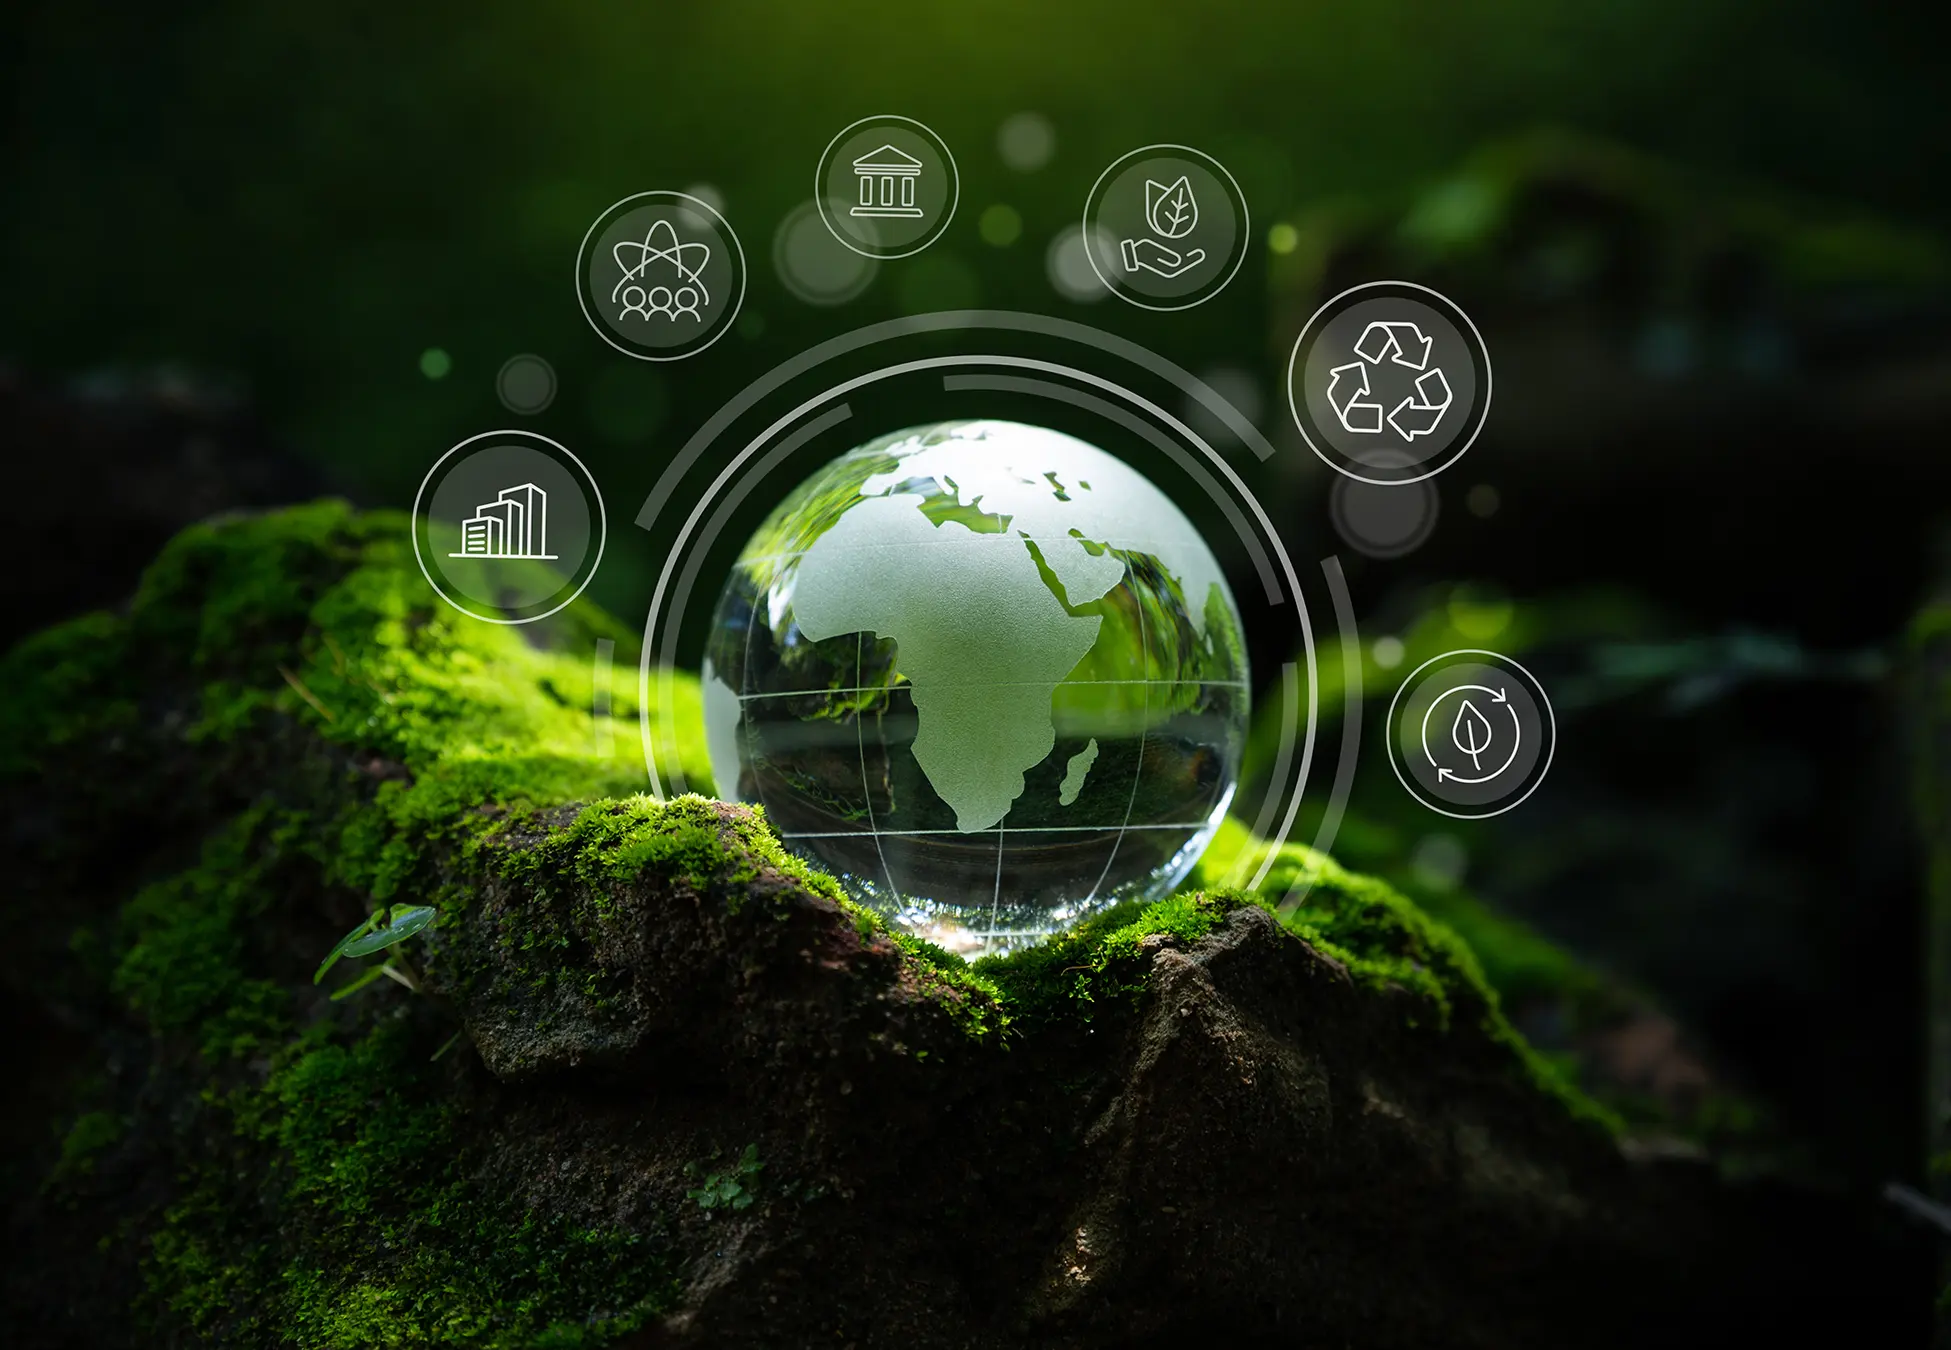 Globální ESG předpisy: Rozdílné cesty ke standardům udržitelnosti